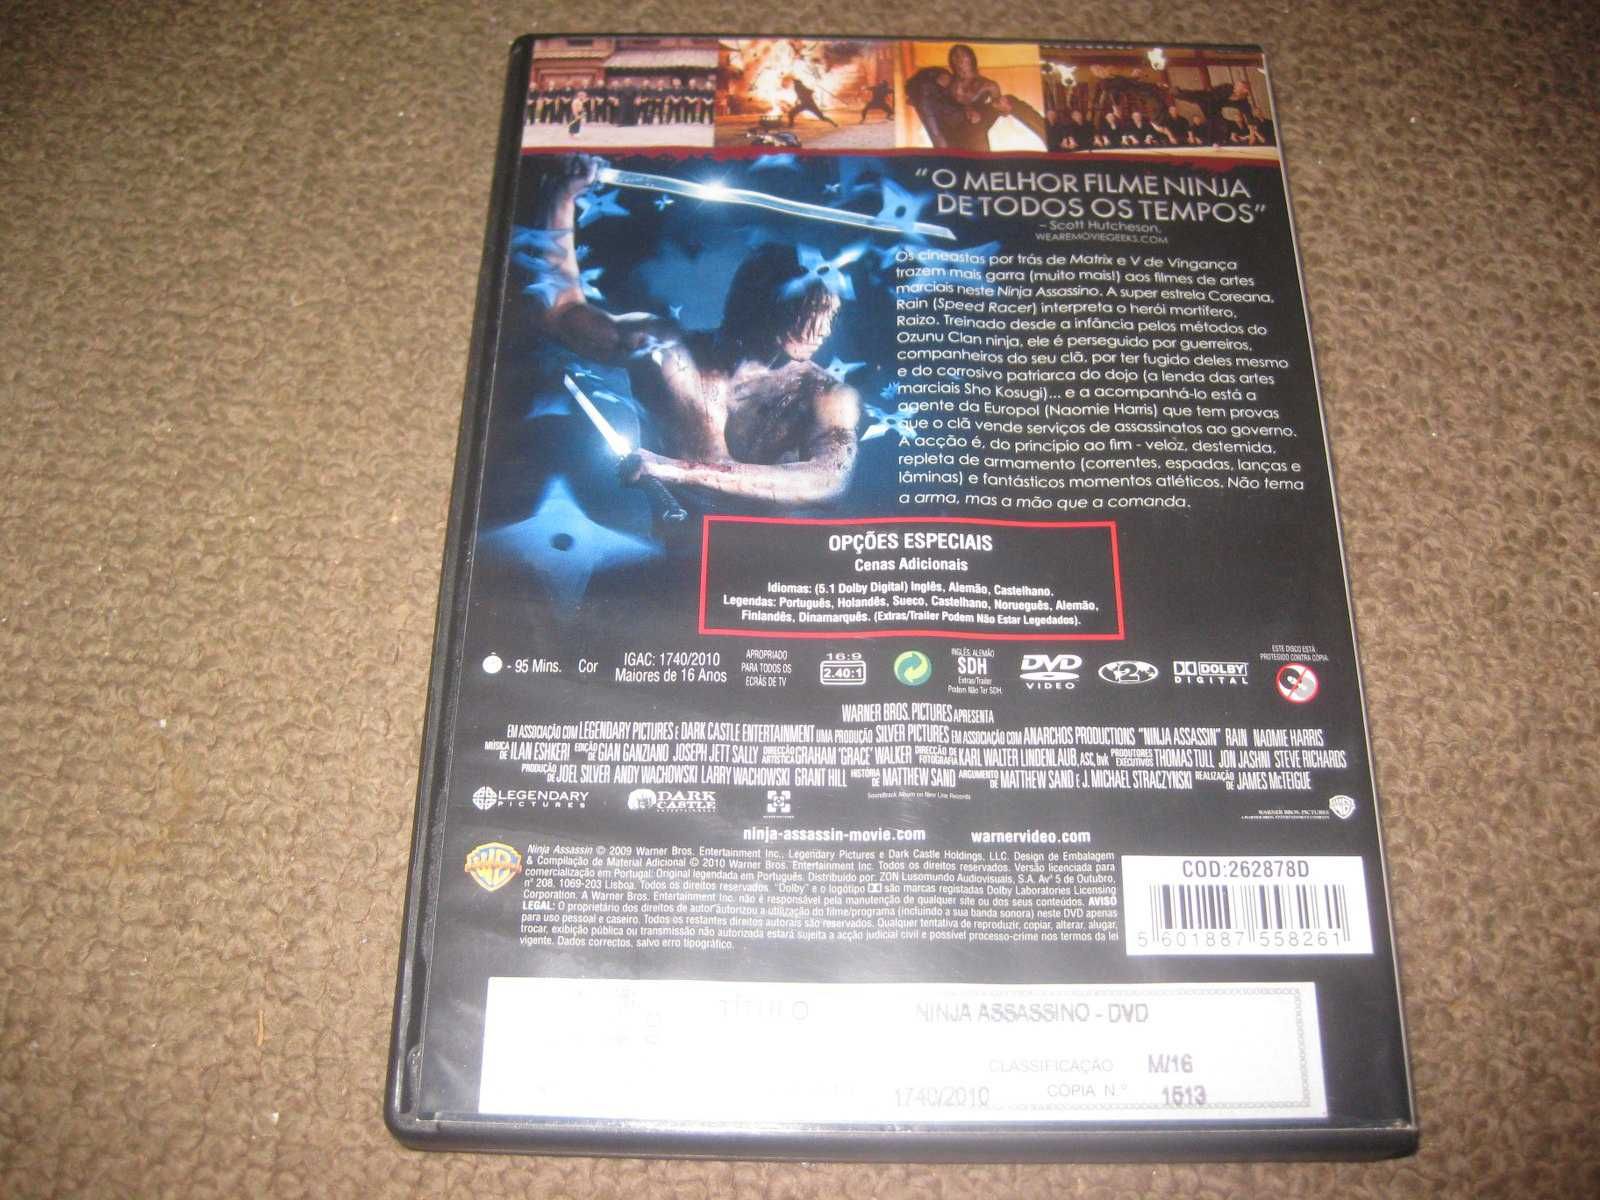 DVD "Ninja Assassino"